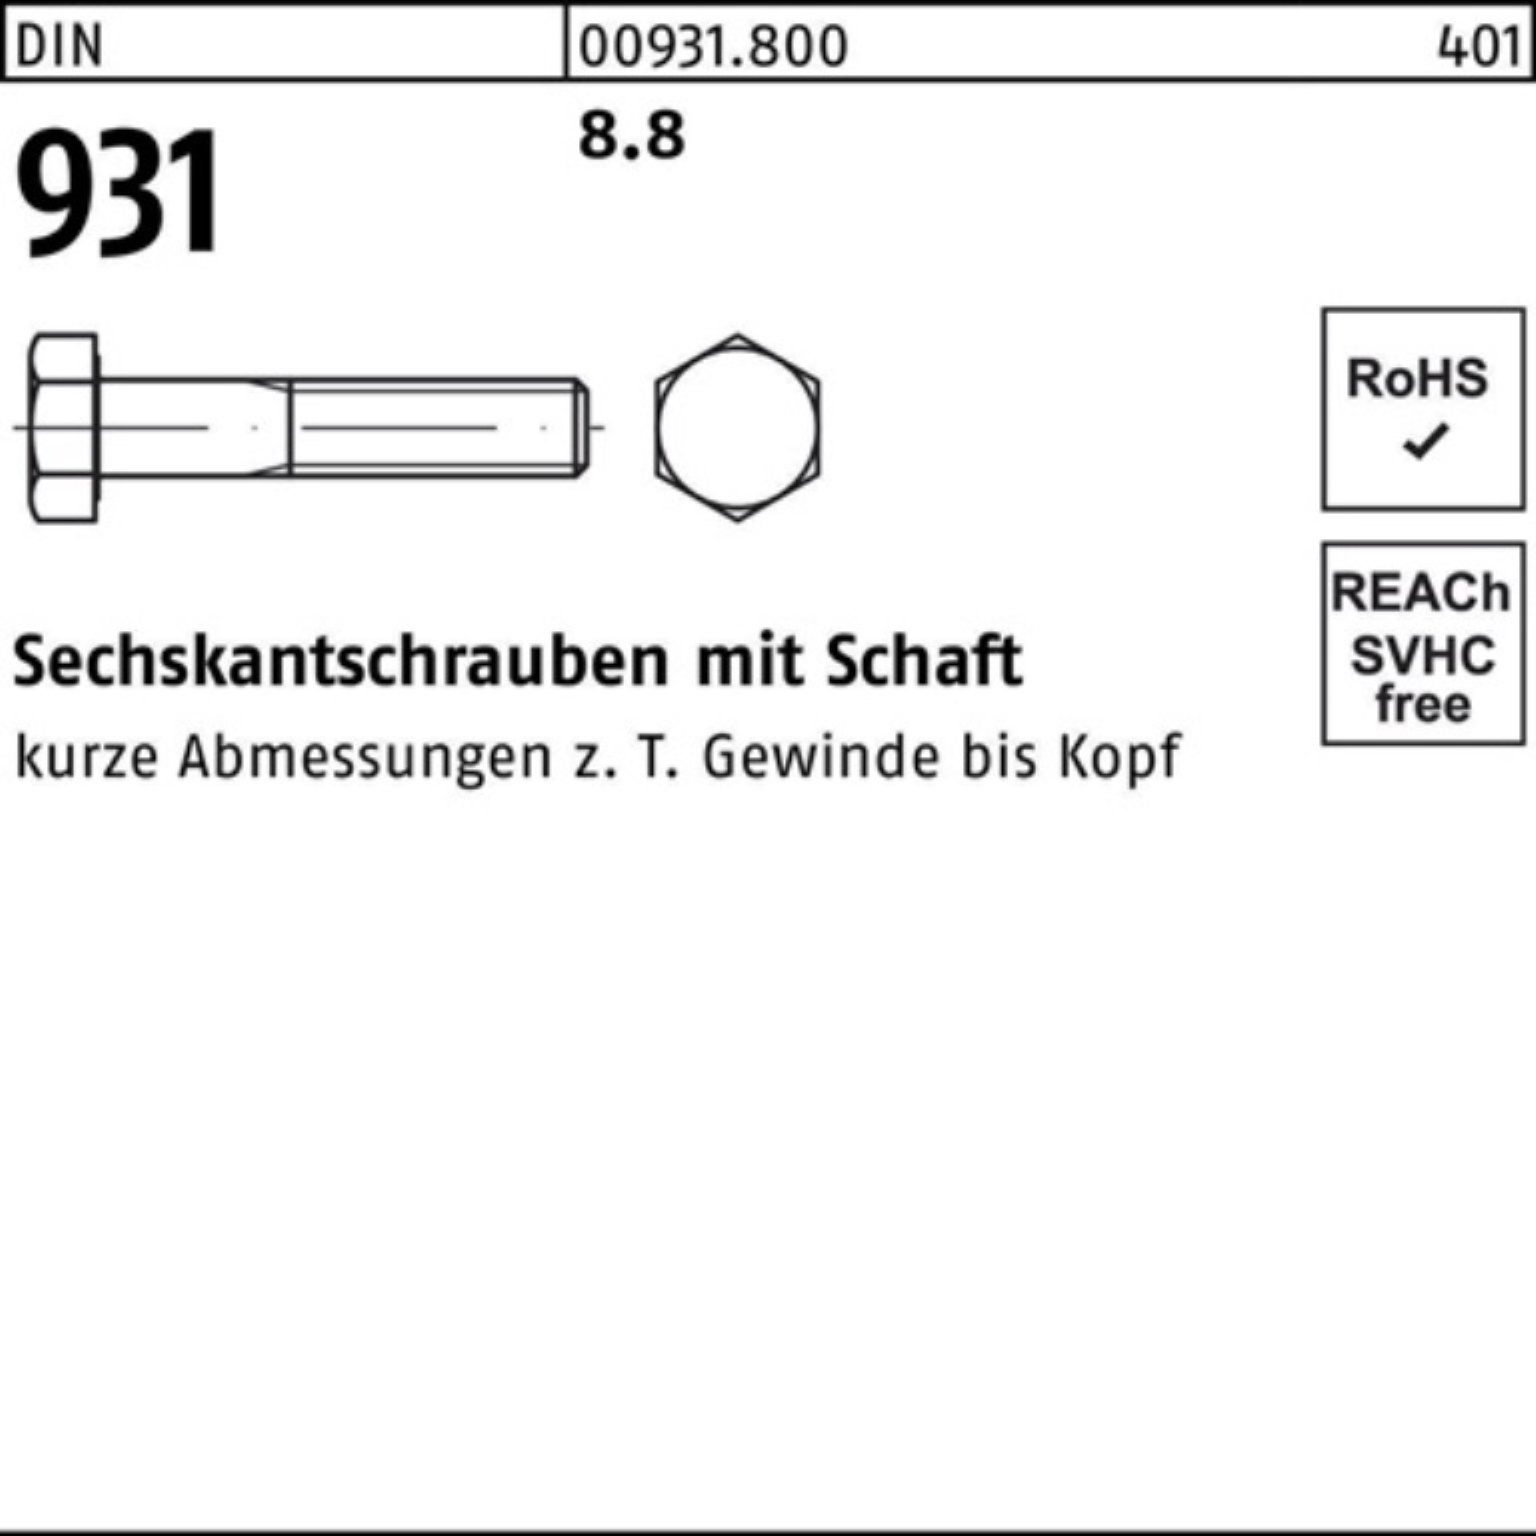 Reyher Sechskantschraube Schaft Sechskantschraube M5x 35 200er 931 DIN DIN Stück 8.8 Pack 200